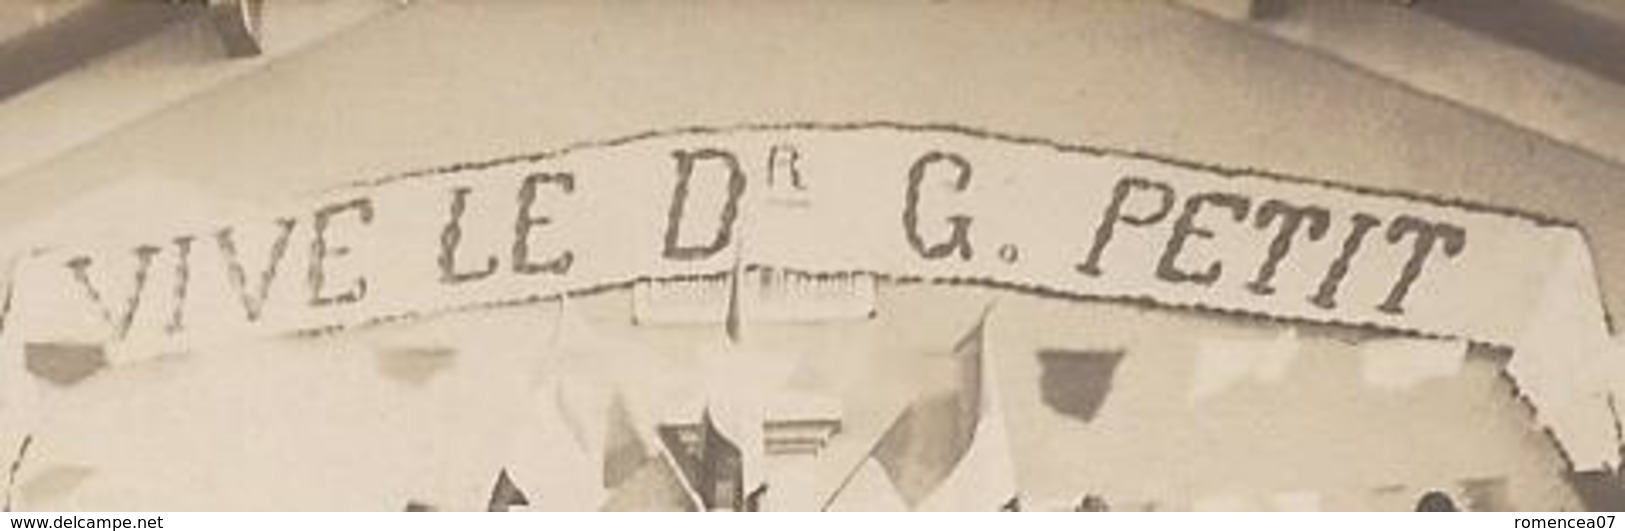 HOMMAGE Au Dr G. PETIT - " VIVE Le Dr G. PETIT " - Vers 1918 - Lieu à Identifier - Militaires Bléssés - WW1 - A Voir ! - Réceptions